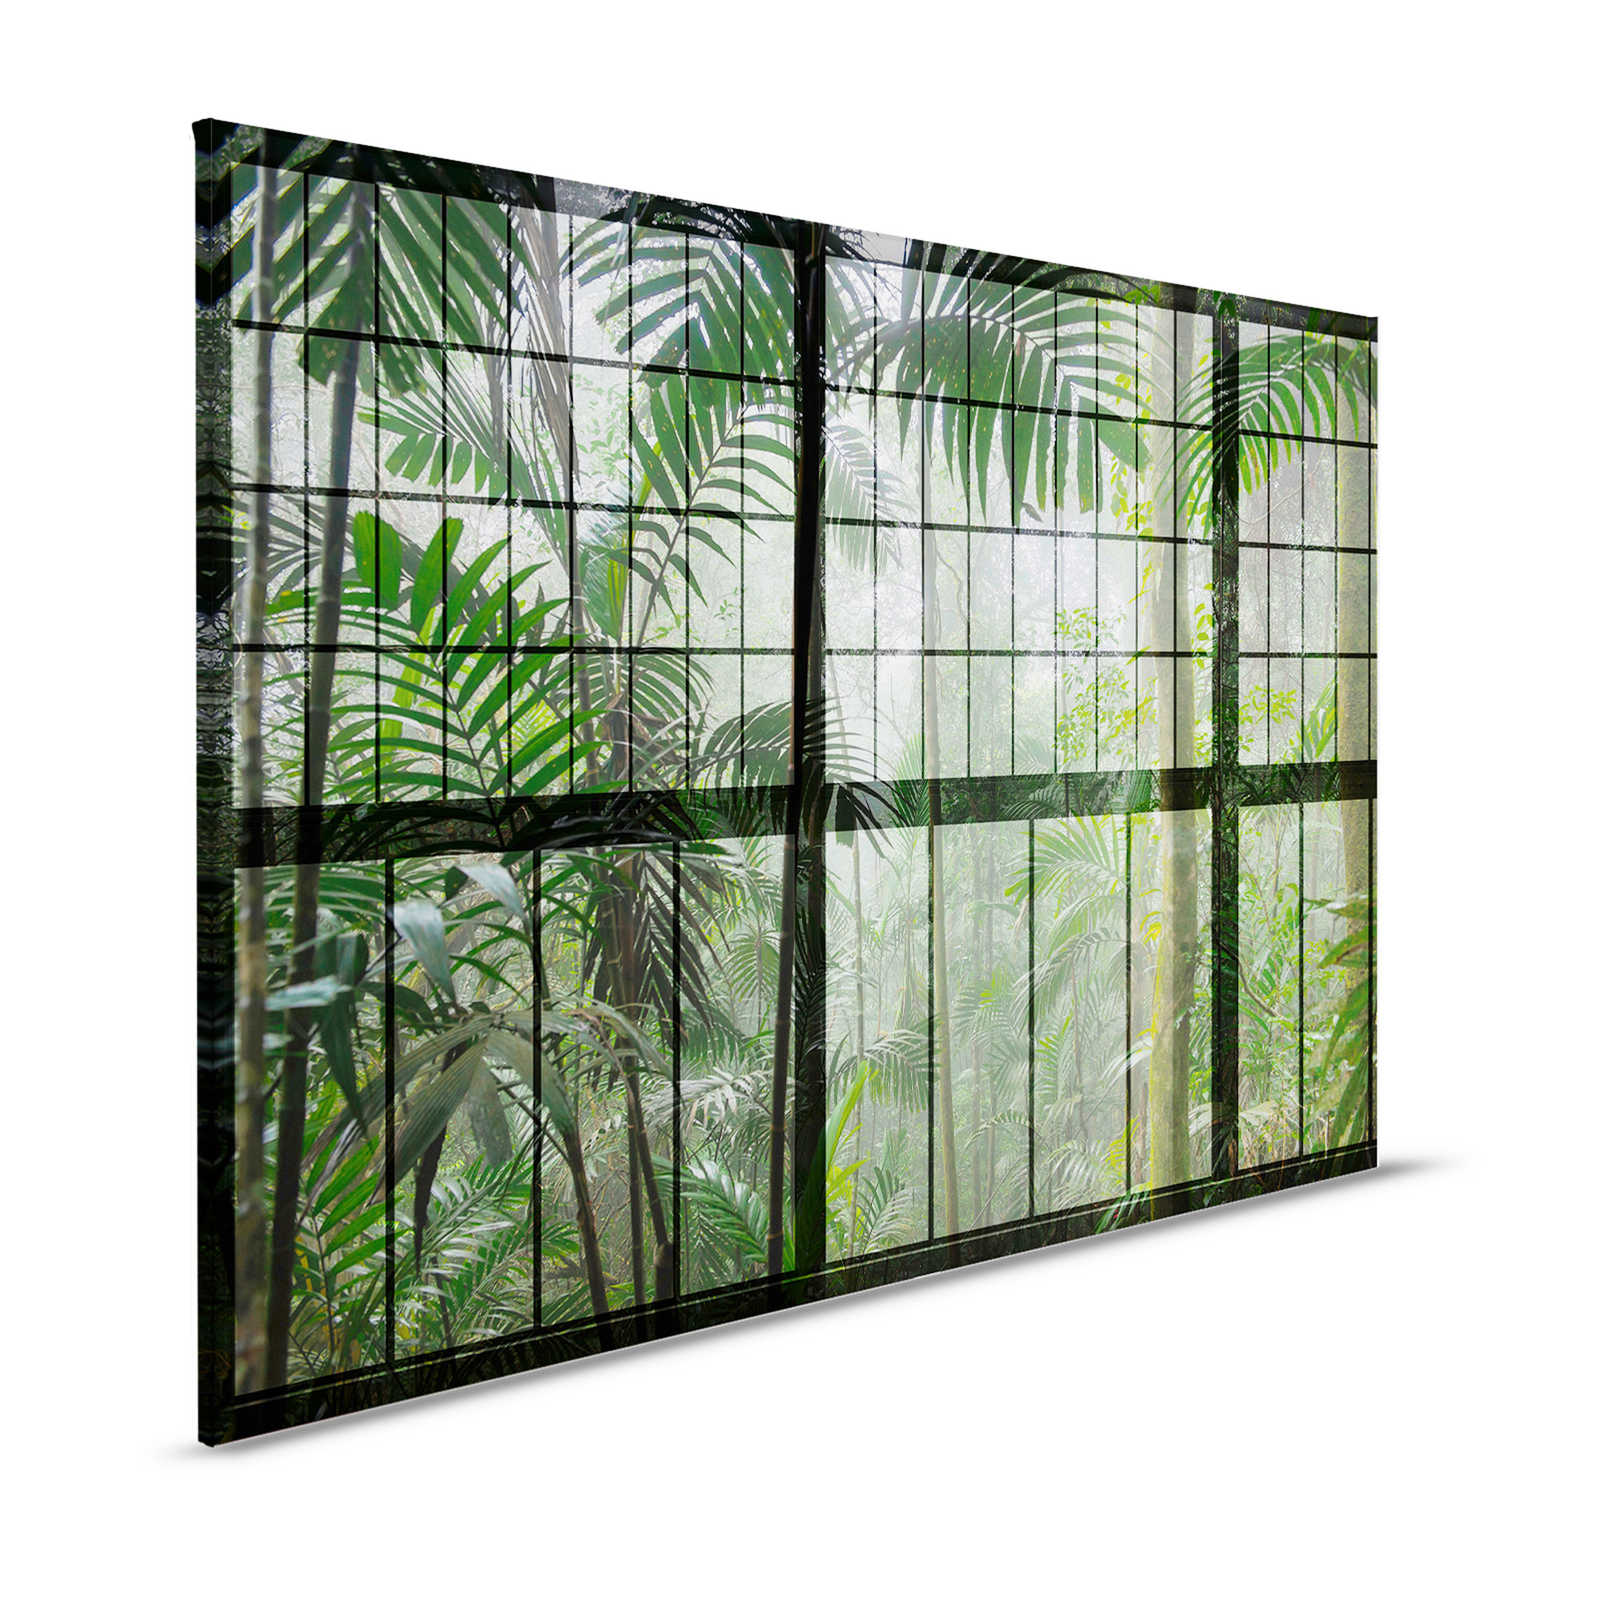 Selva tropical 1 - Pintura en lienzo con vista a la selva - 1,20 m x 0,80 m
